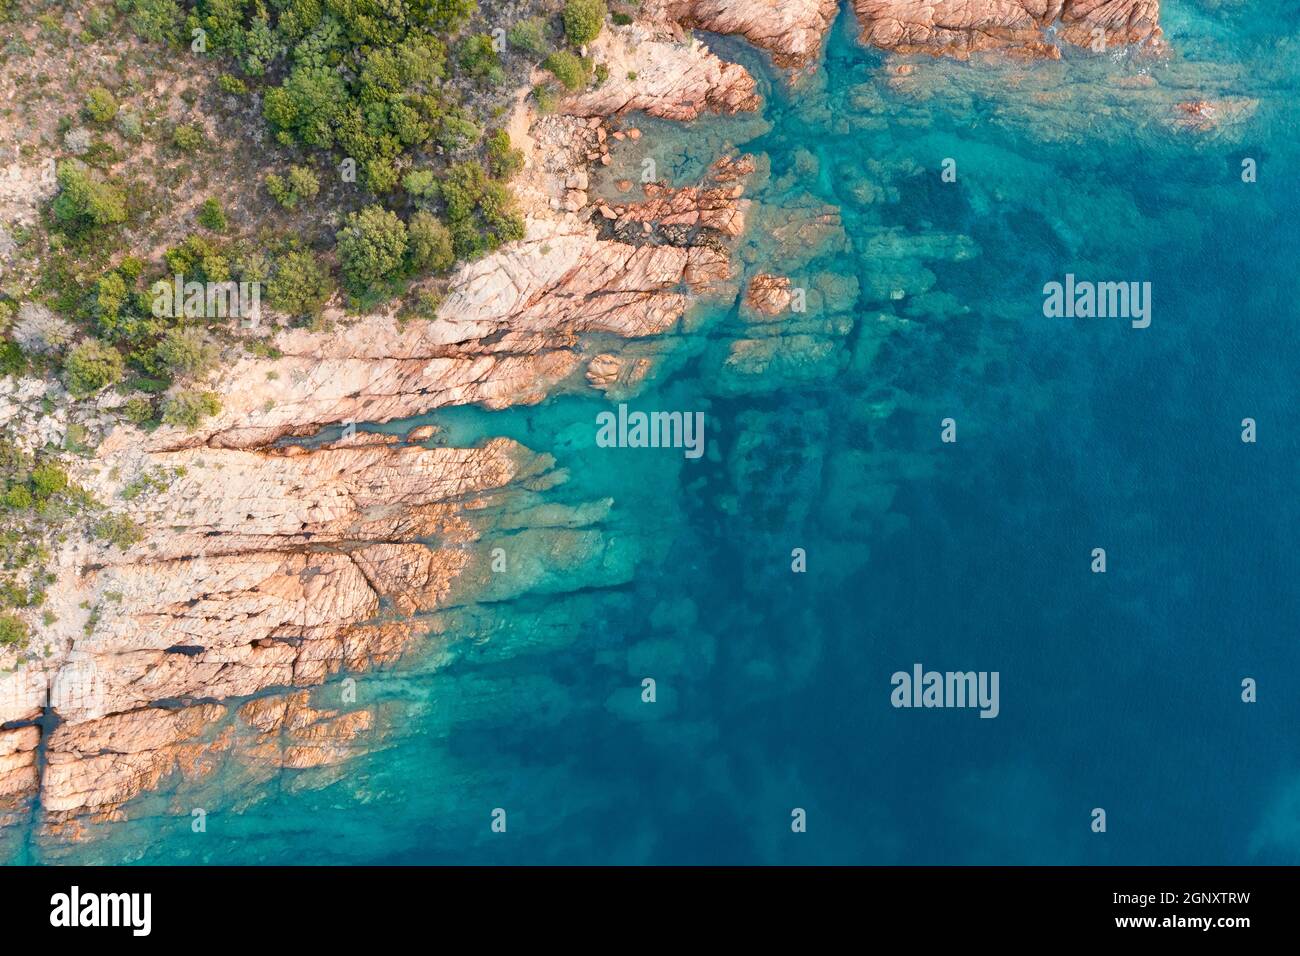 Blick von oben, atemberaubende Luftaufnahme einer grünen und felsigen Küste, die von einem türkisfarbenen, kristallklaren Wasser umspült wird. Liscia Ruja, Costa Smeralda, Sardinien Stockfoto